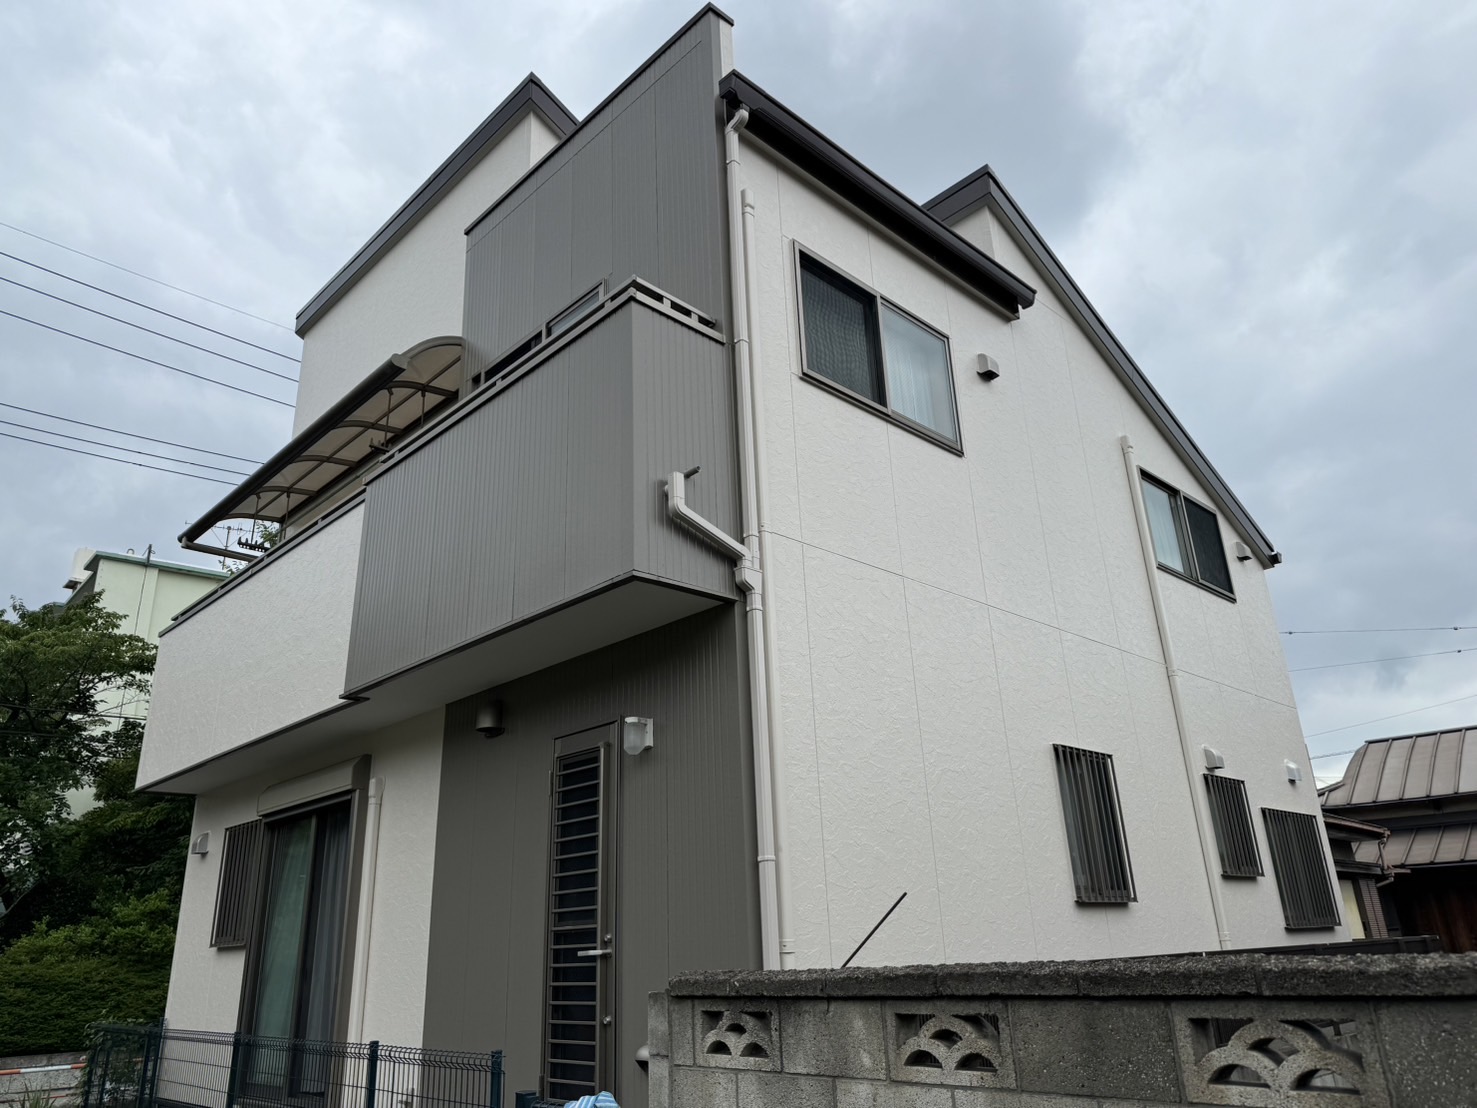 【東京都足立区】O様邸外壁屋根塗装工事が完了しました。日本ペイント パーフェクトトップ 画像